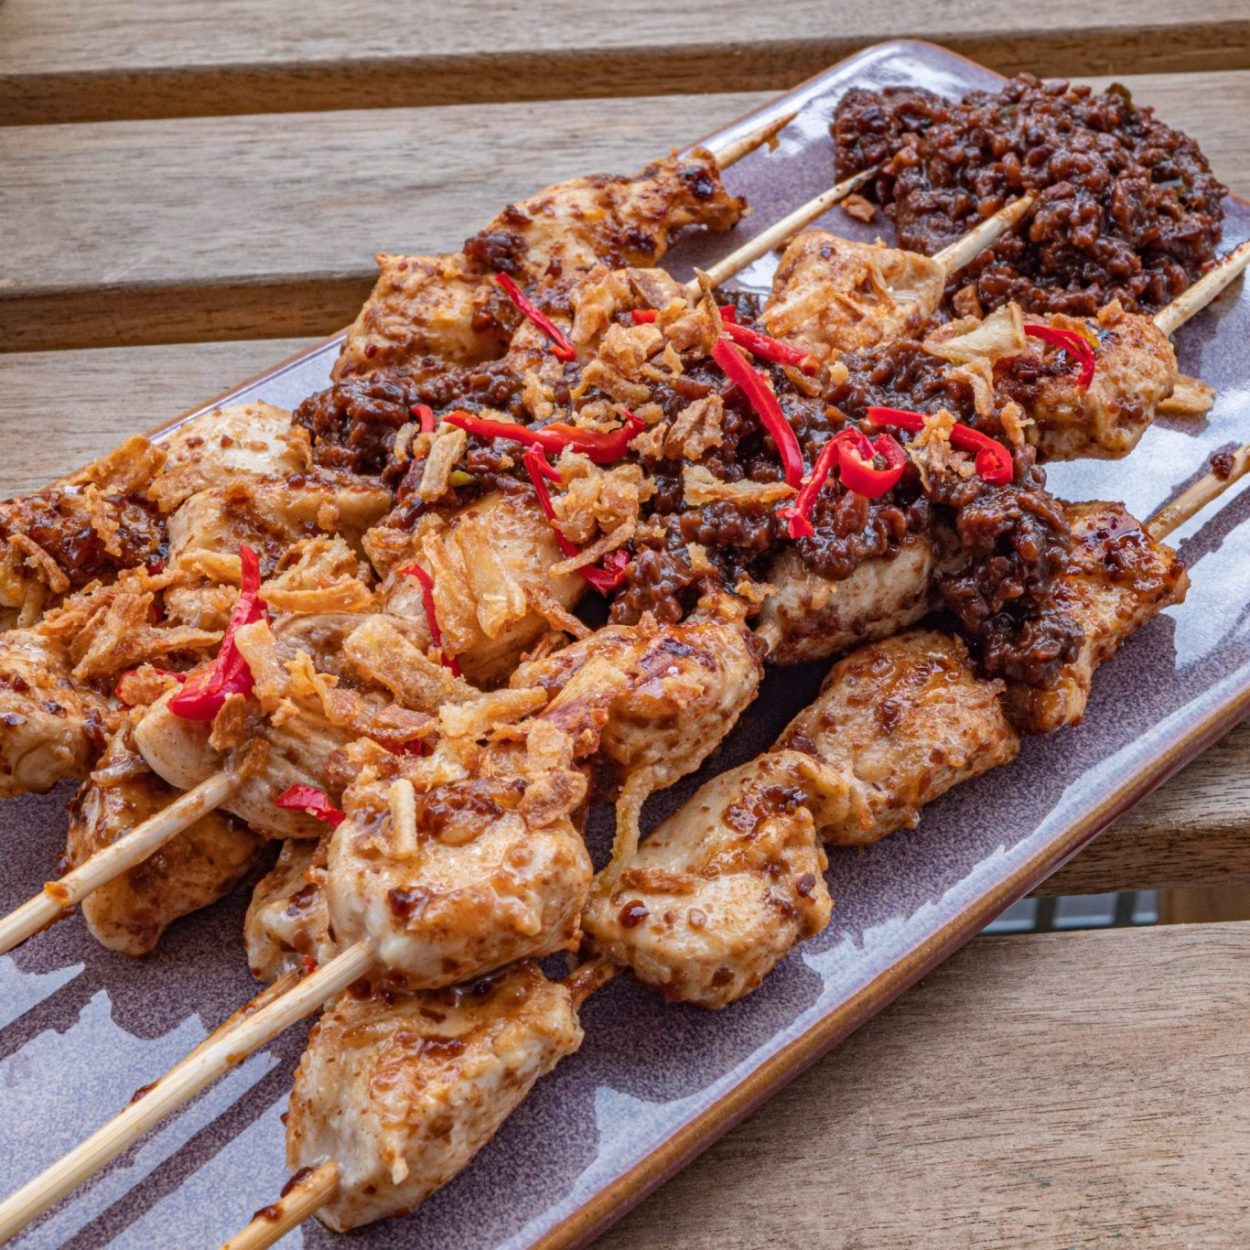 Saté ayam madura - Brochettes de poulet et sauce aux cacahuètes - Recette indonésienne